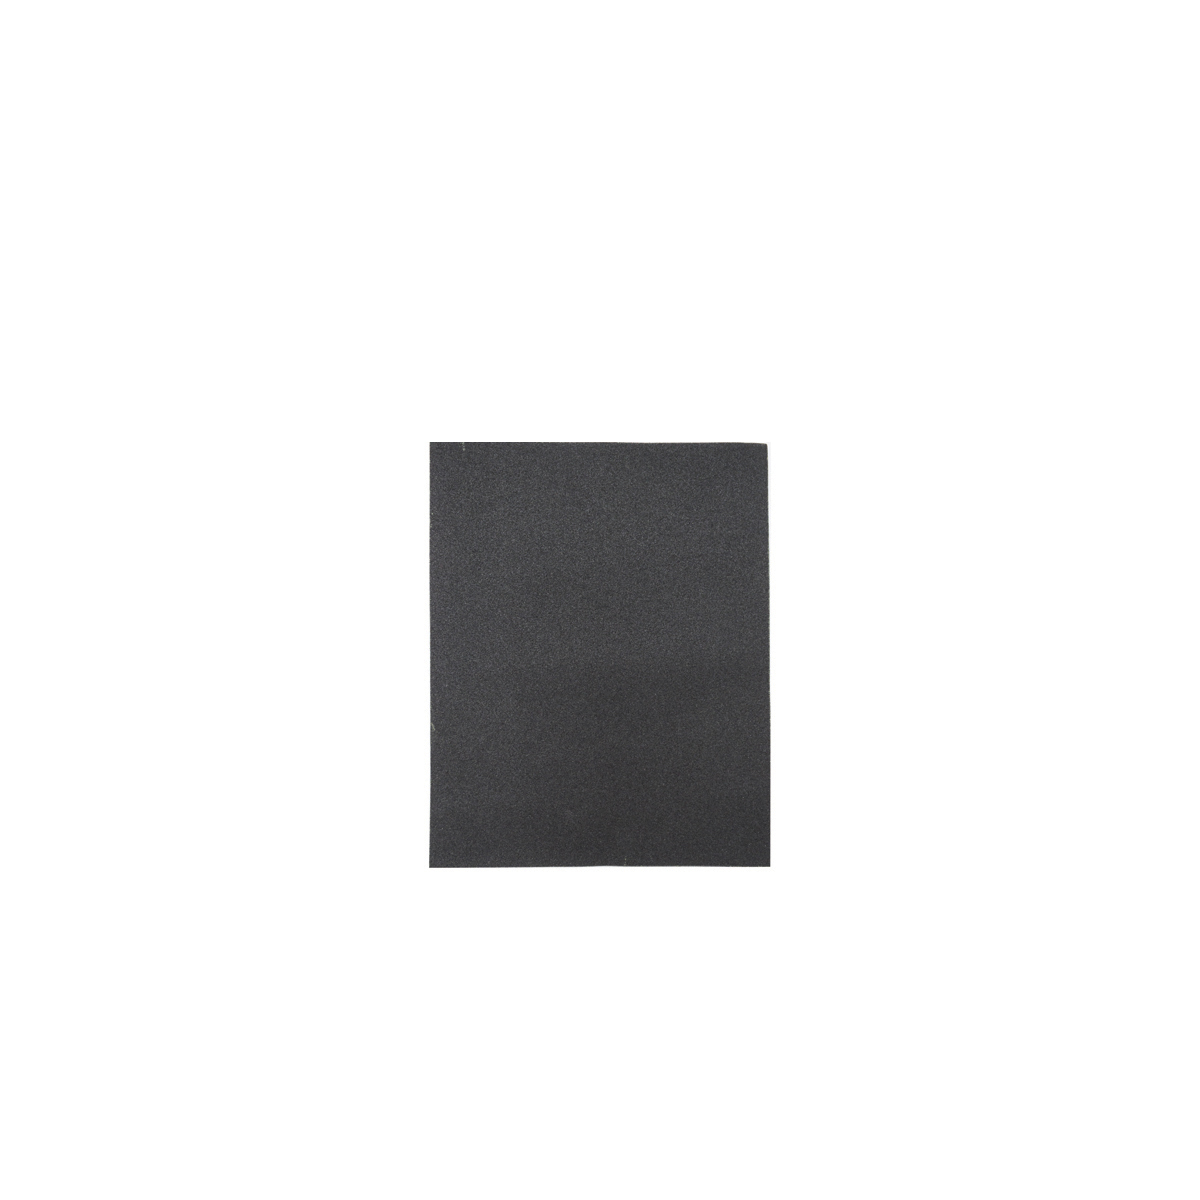 Лист шлифовальный Кедр, P 400, 230 x 280 мм, водостойкий,   бумага, 10 шт водостойкий шлифовальный лист ремоколор